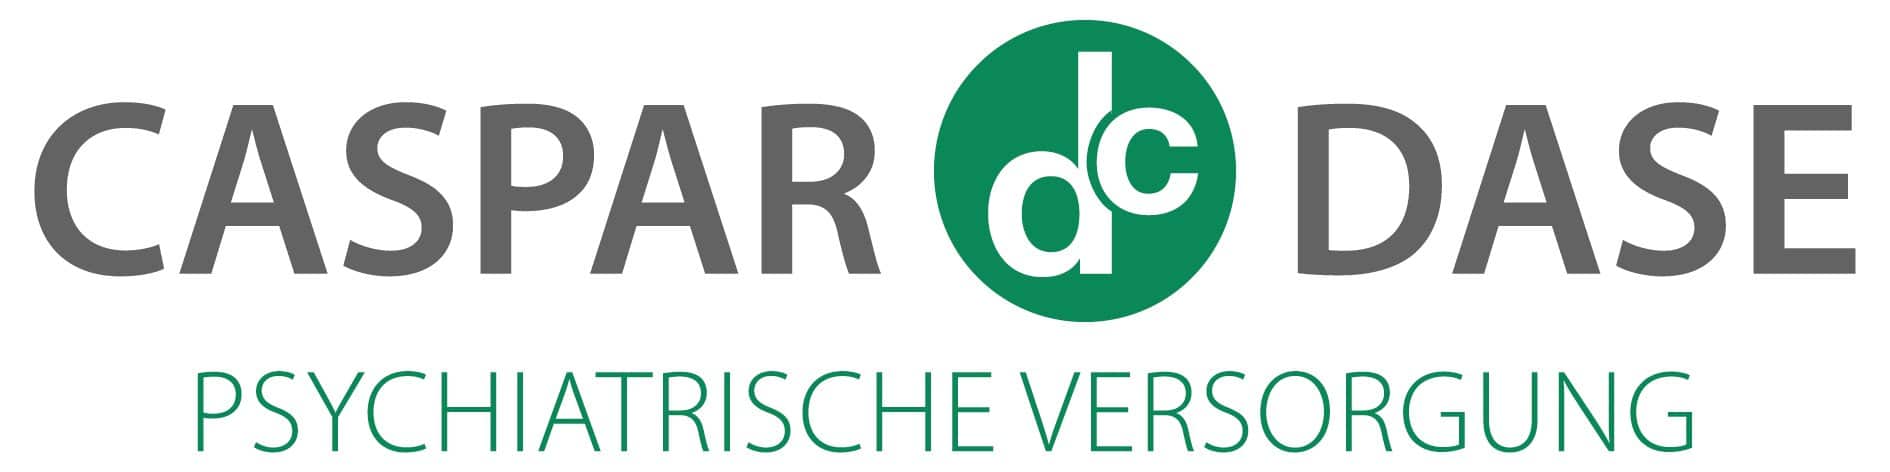 Caspar & Dase GmbH